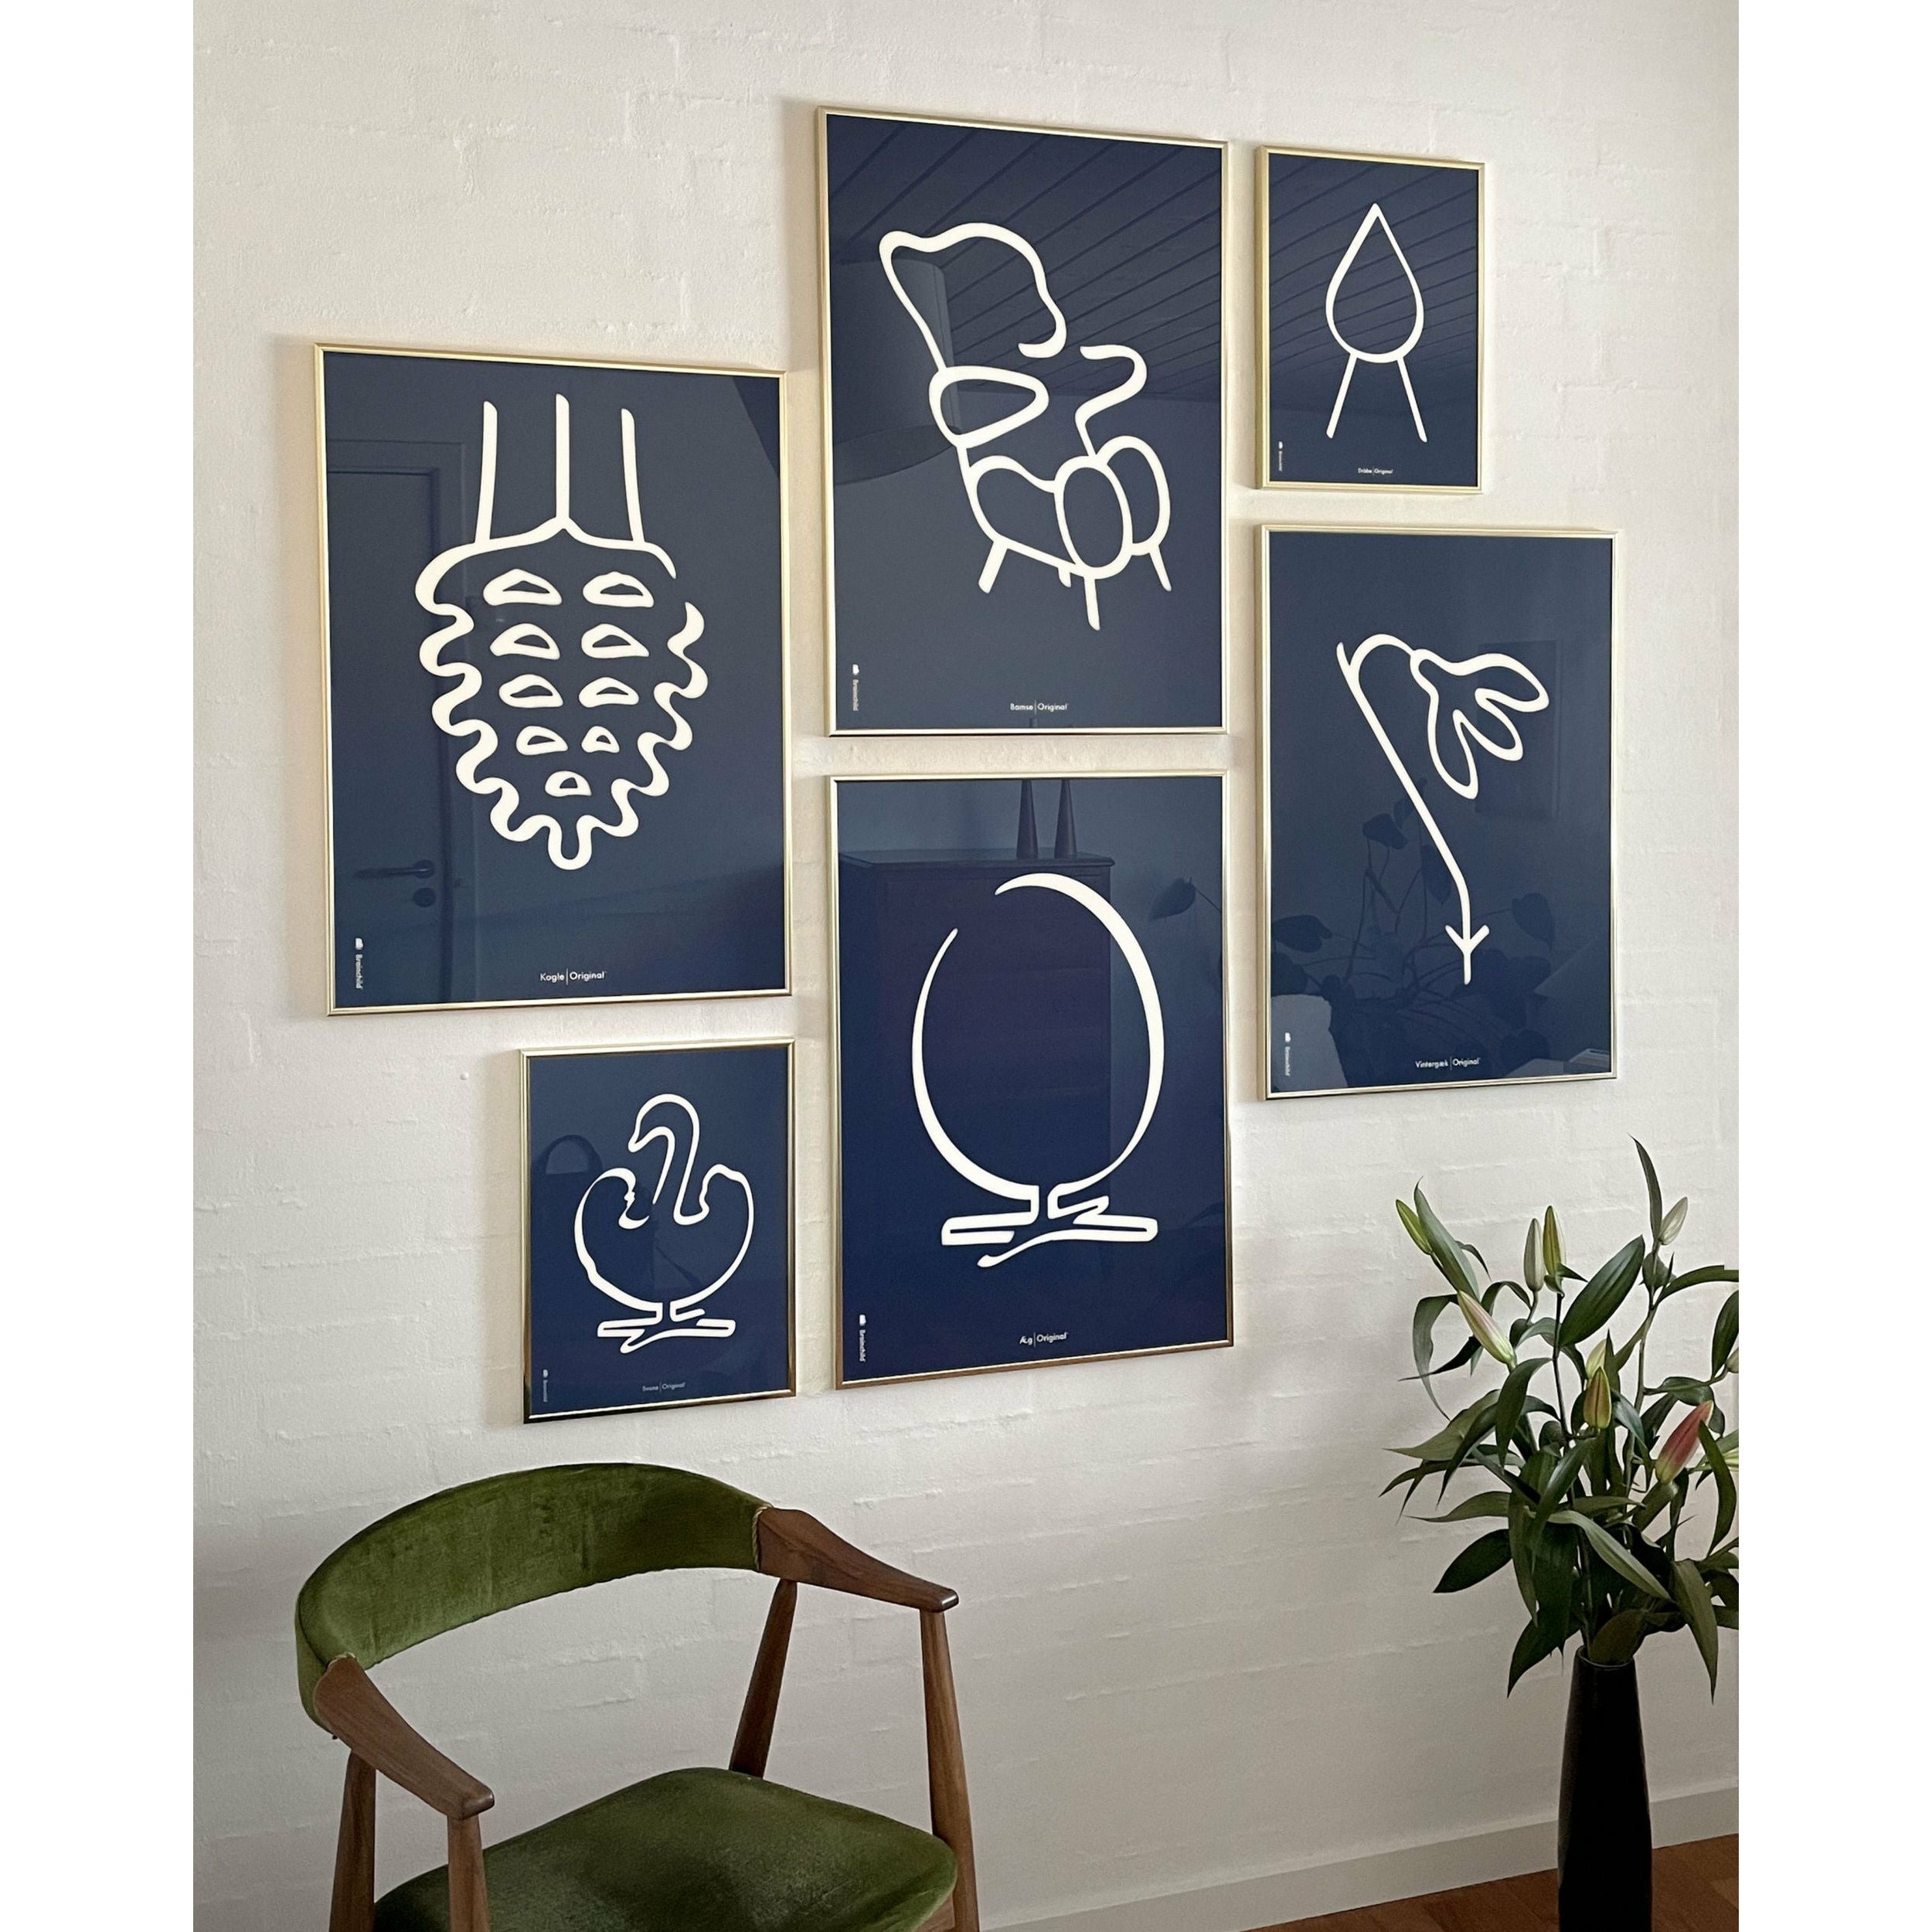 Pomysły plakat linii stożkowej, rama wykonana z ciemnego drewna 70x100 cm, niebieskie tło